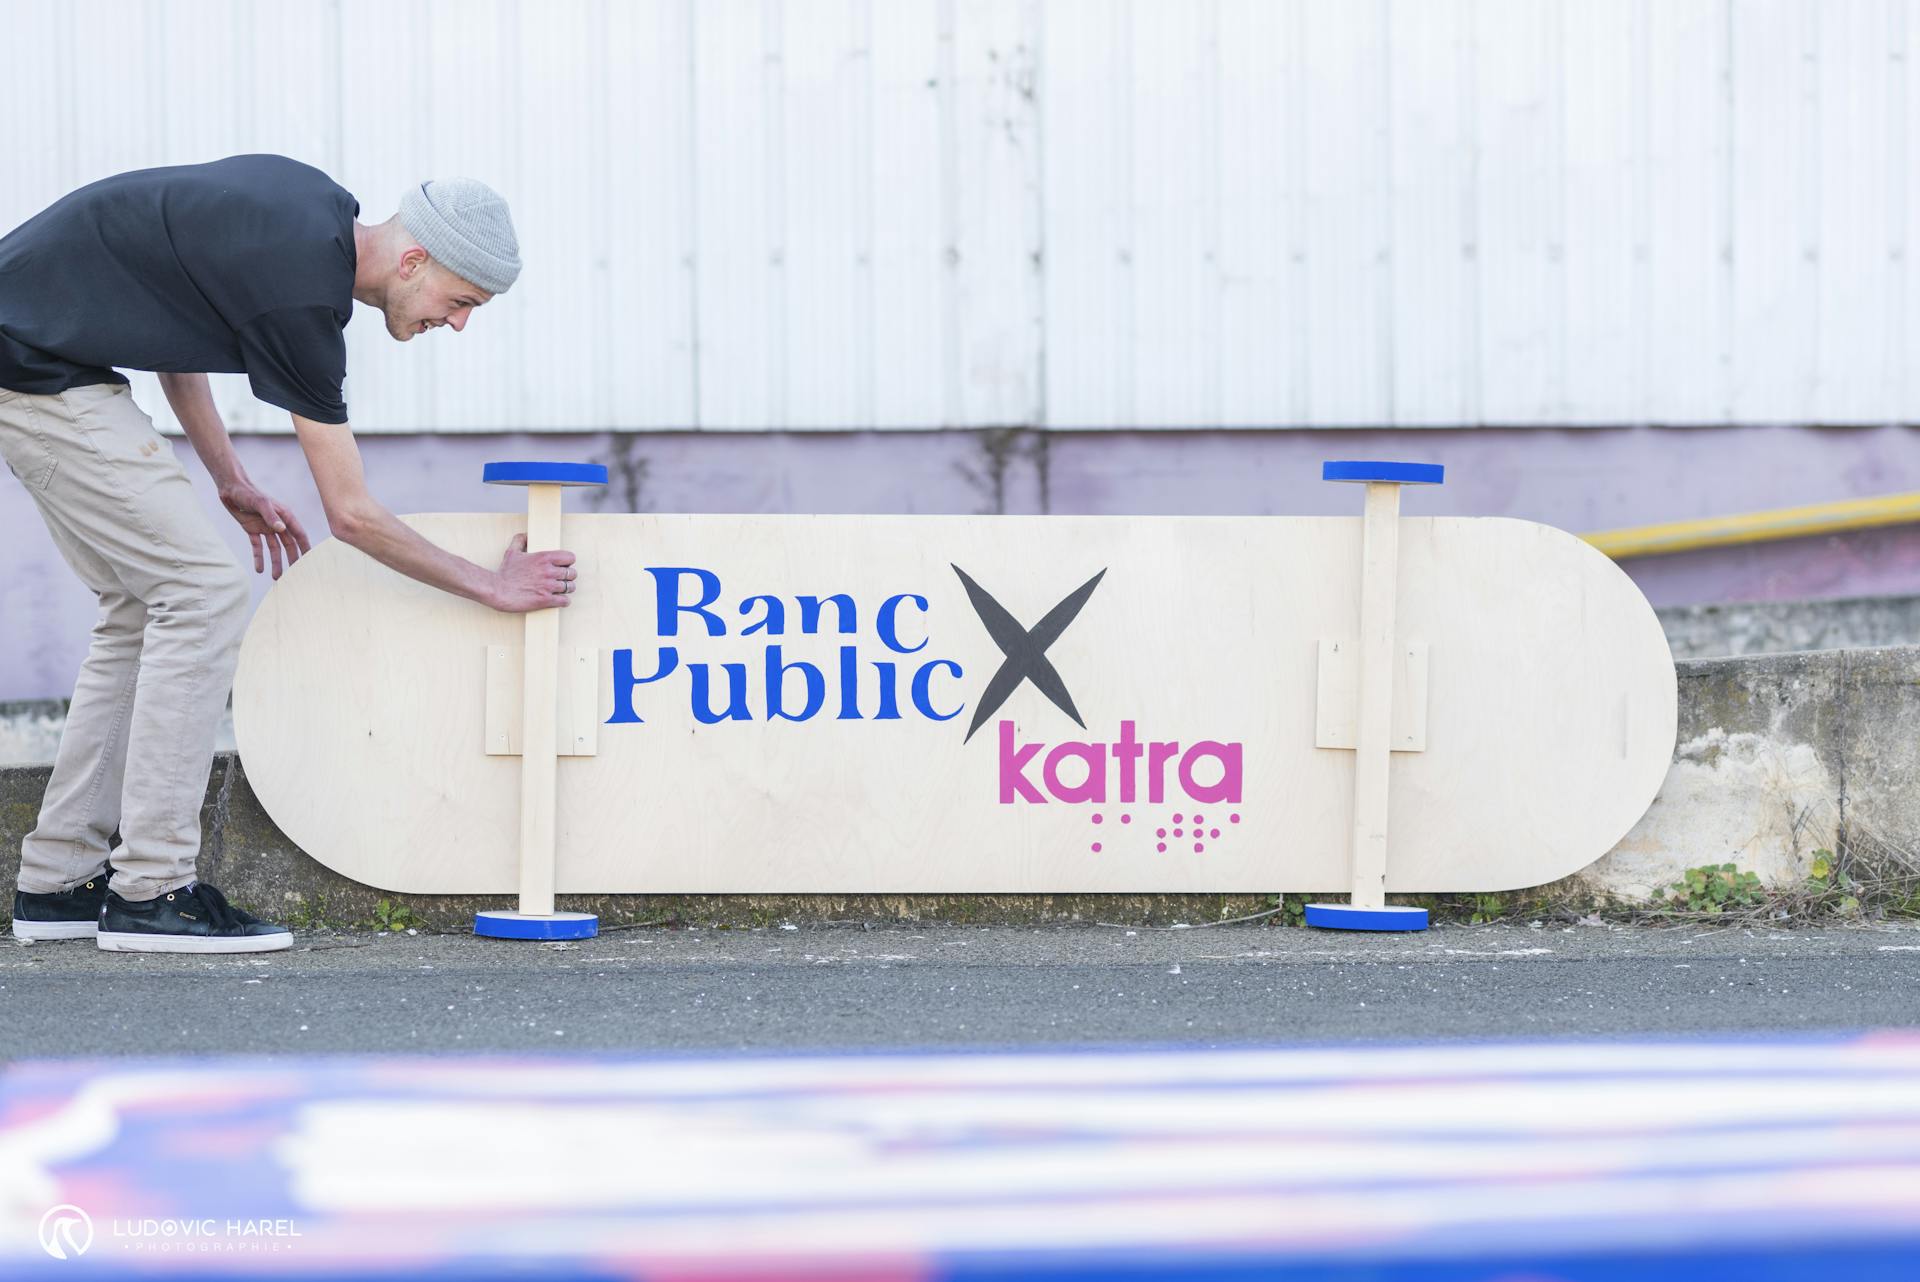 Un skateboard géant DIY, réalisé par les équipes de Banc Public Skatestore, la communauté de skateboard nantaise, et l'agence de design Studio Katra.